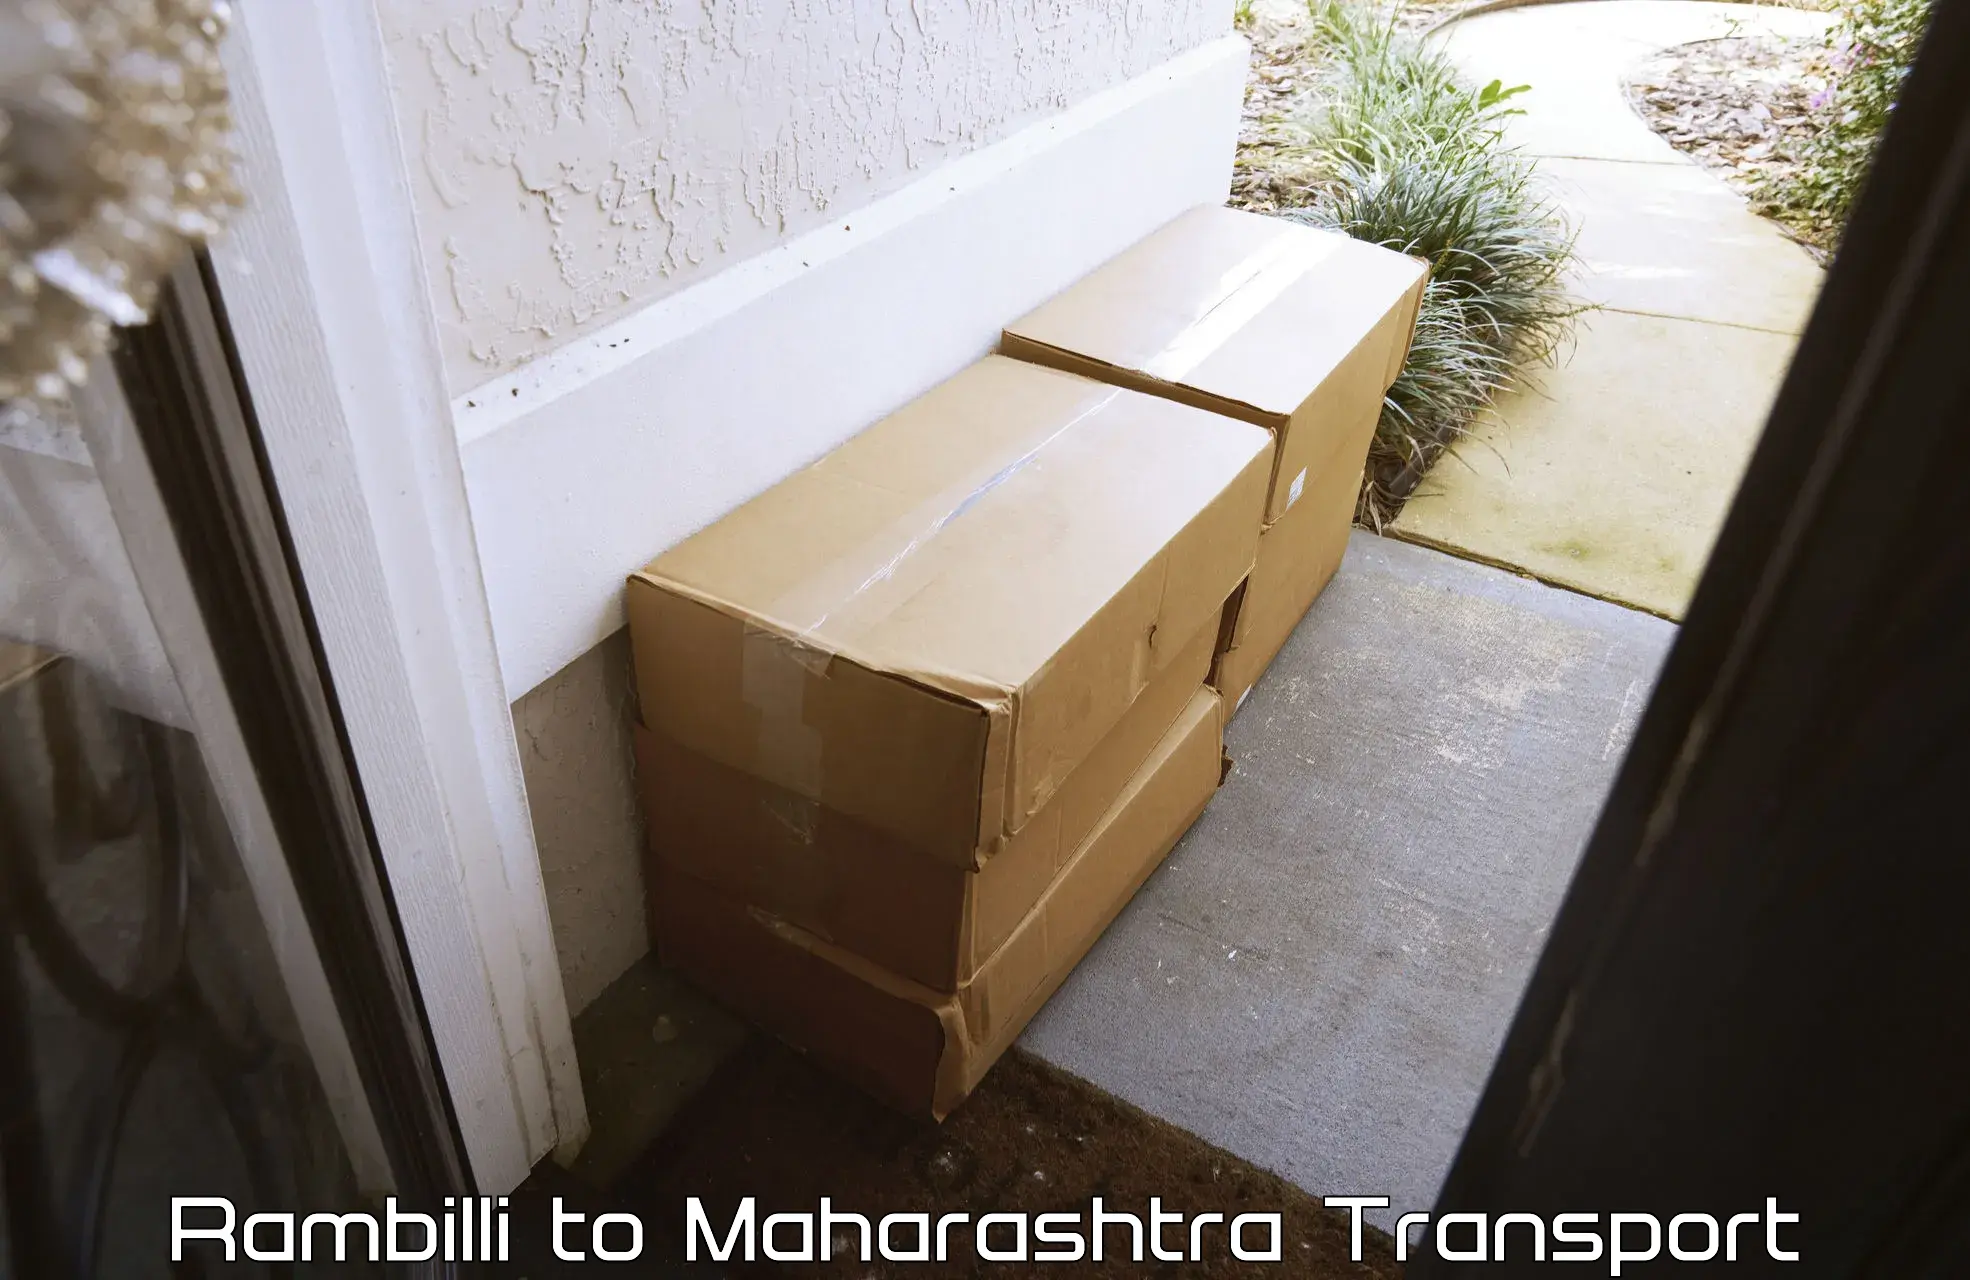 Online transport Rambilli to Pandharpur